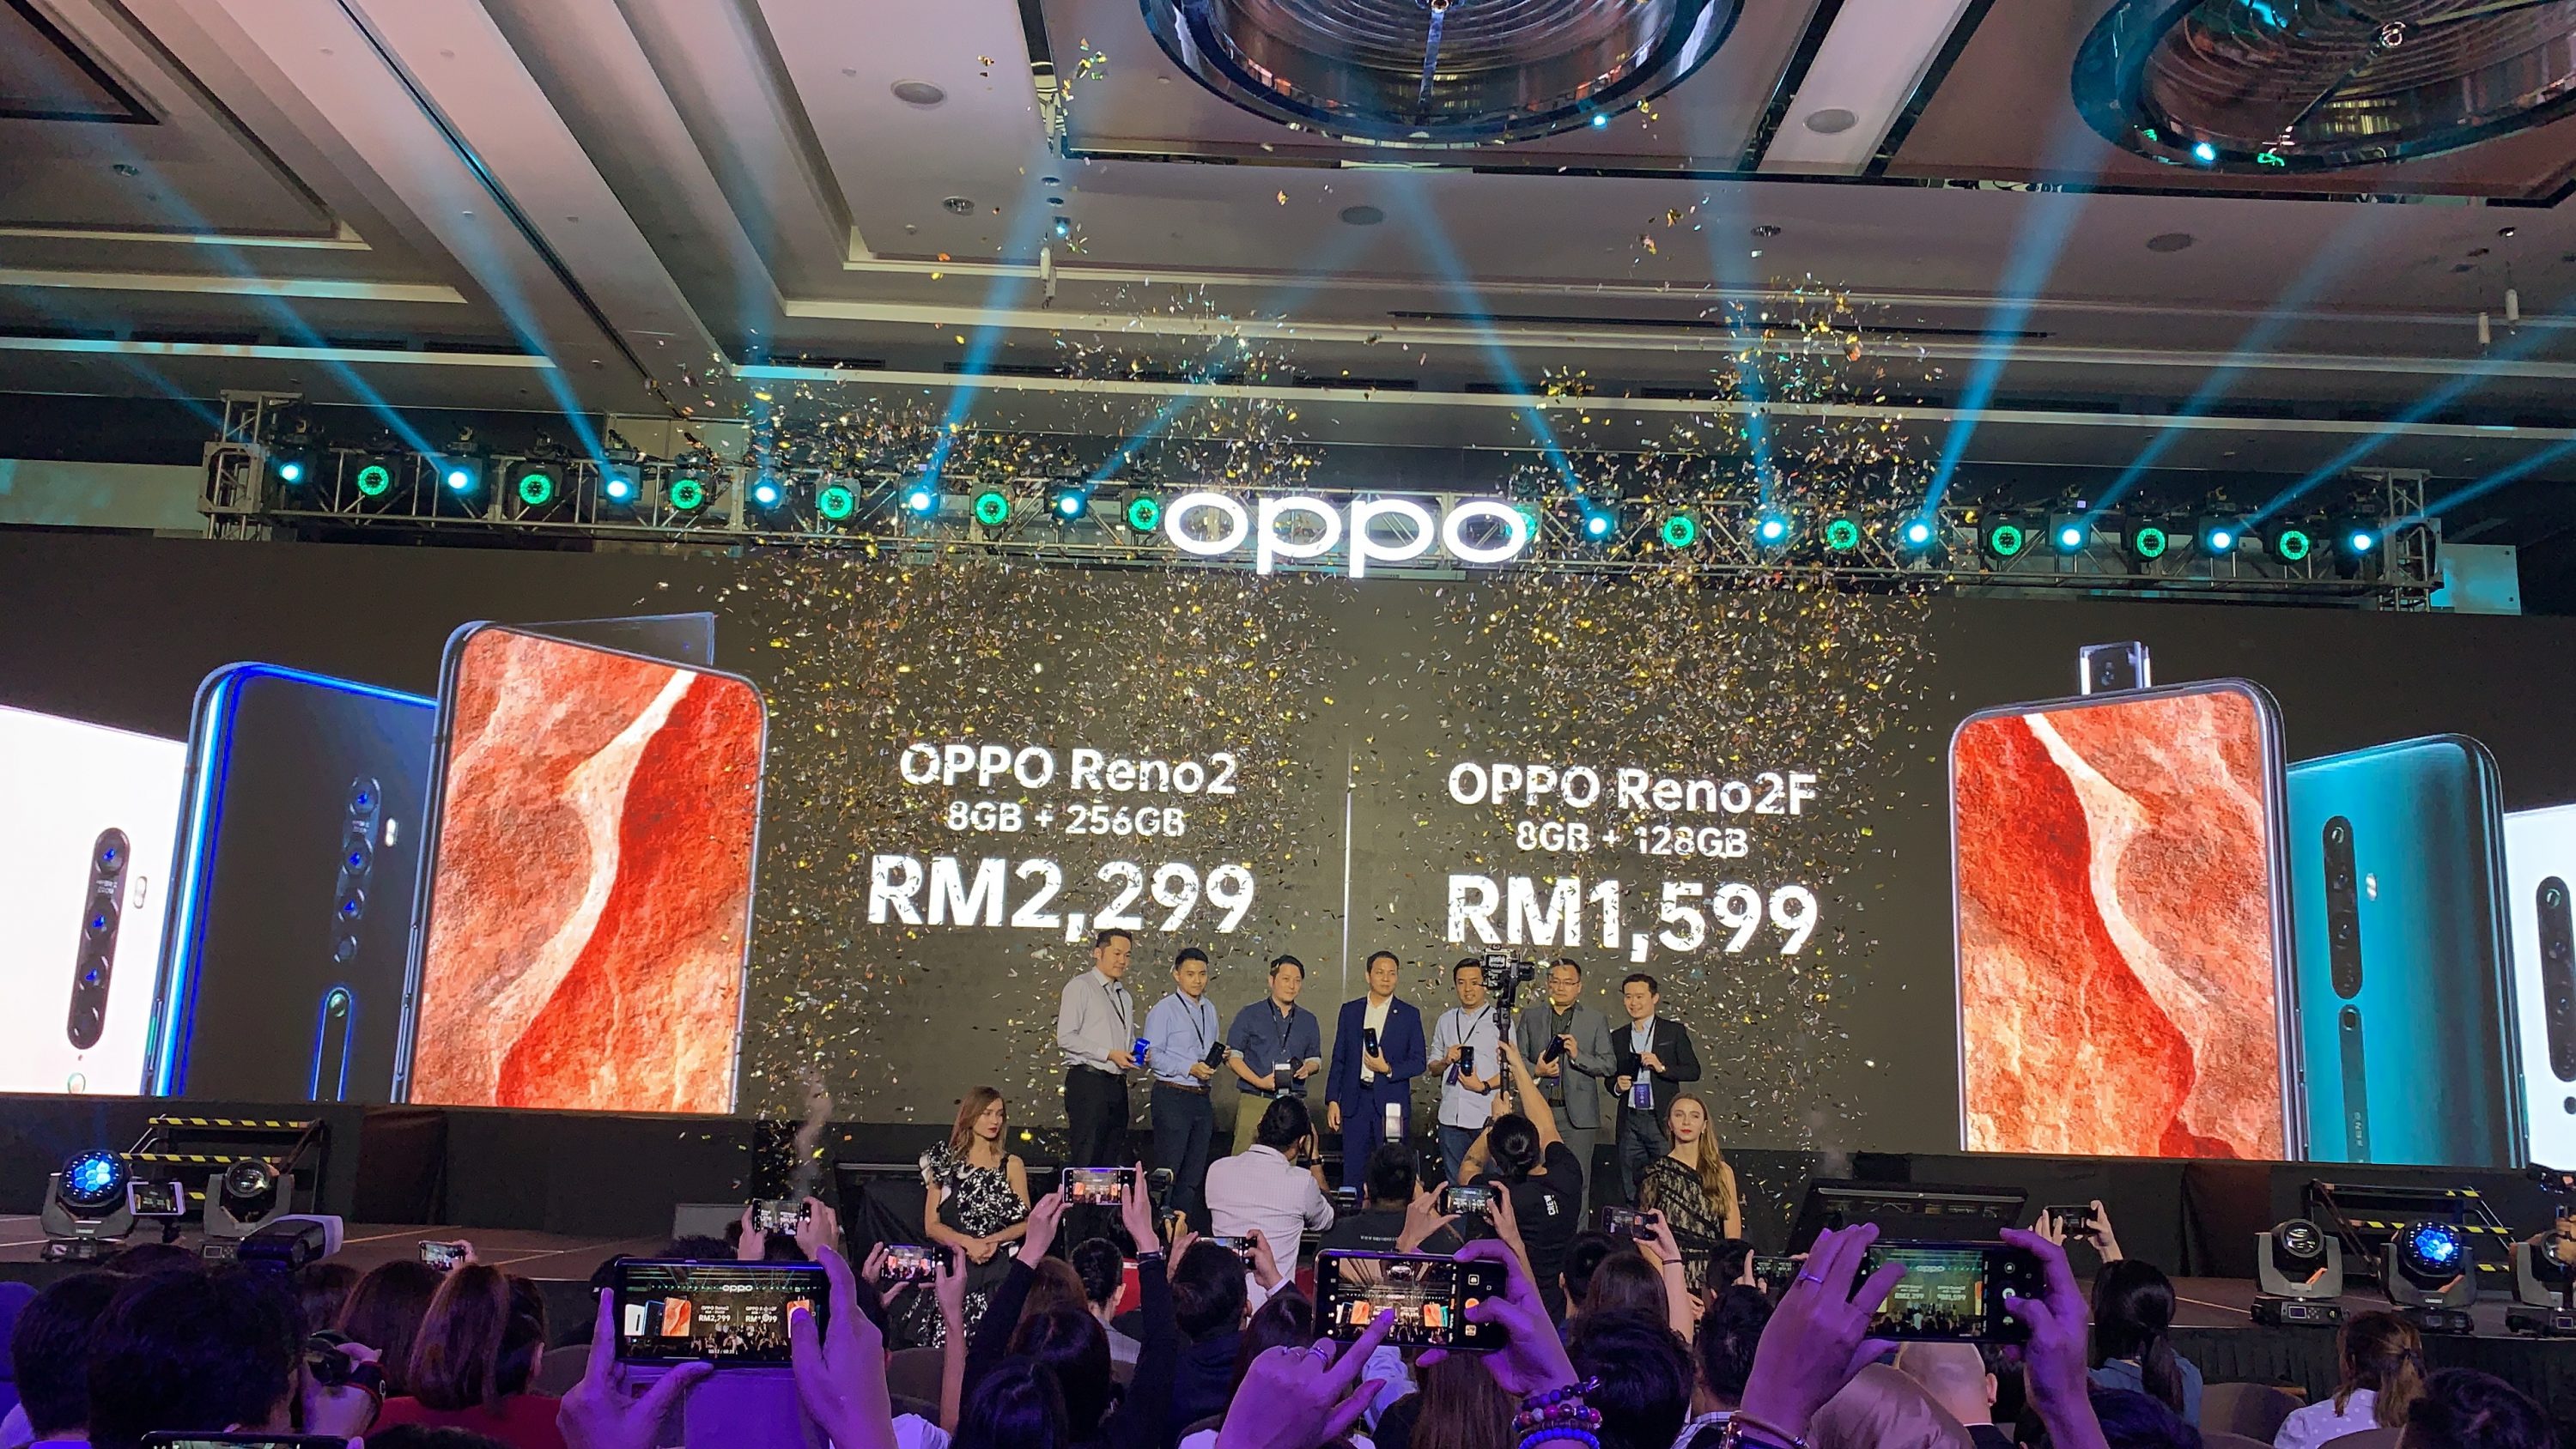 Oppo Reno 2 Malaysia: Everything you need to know - SoyaCincau